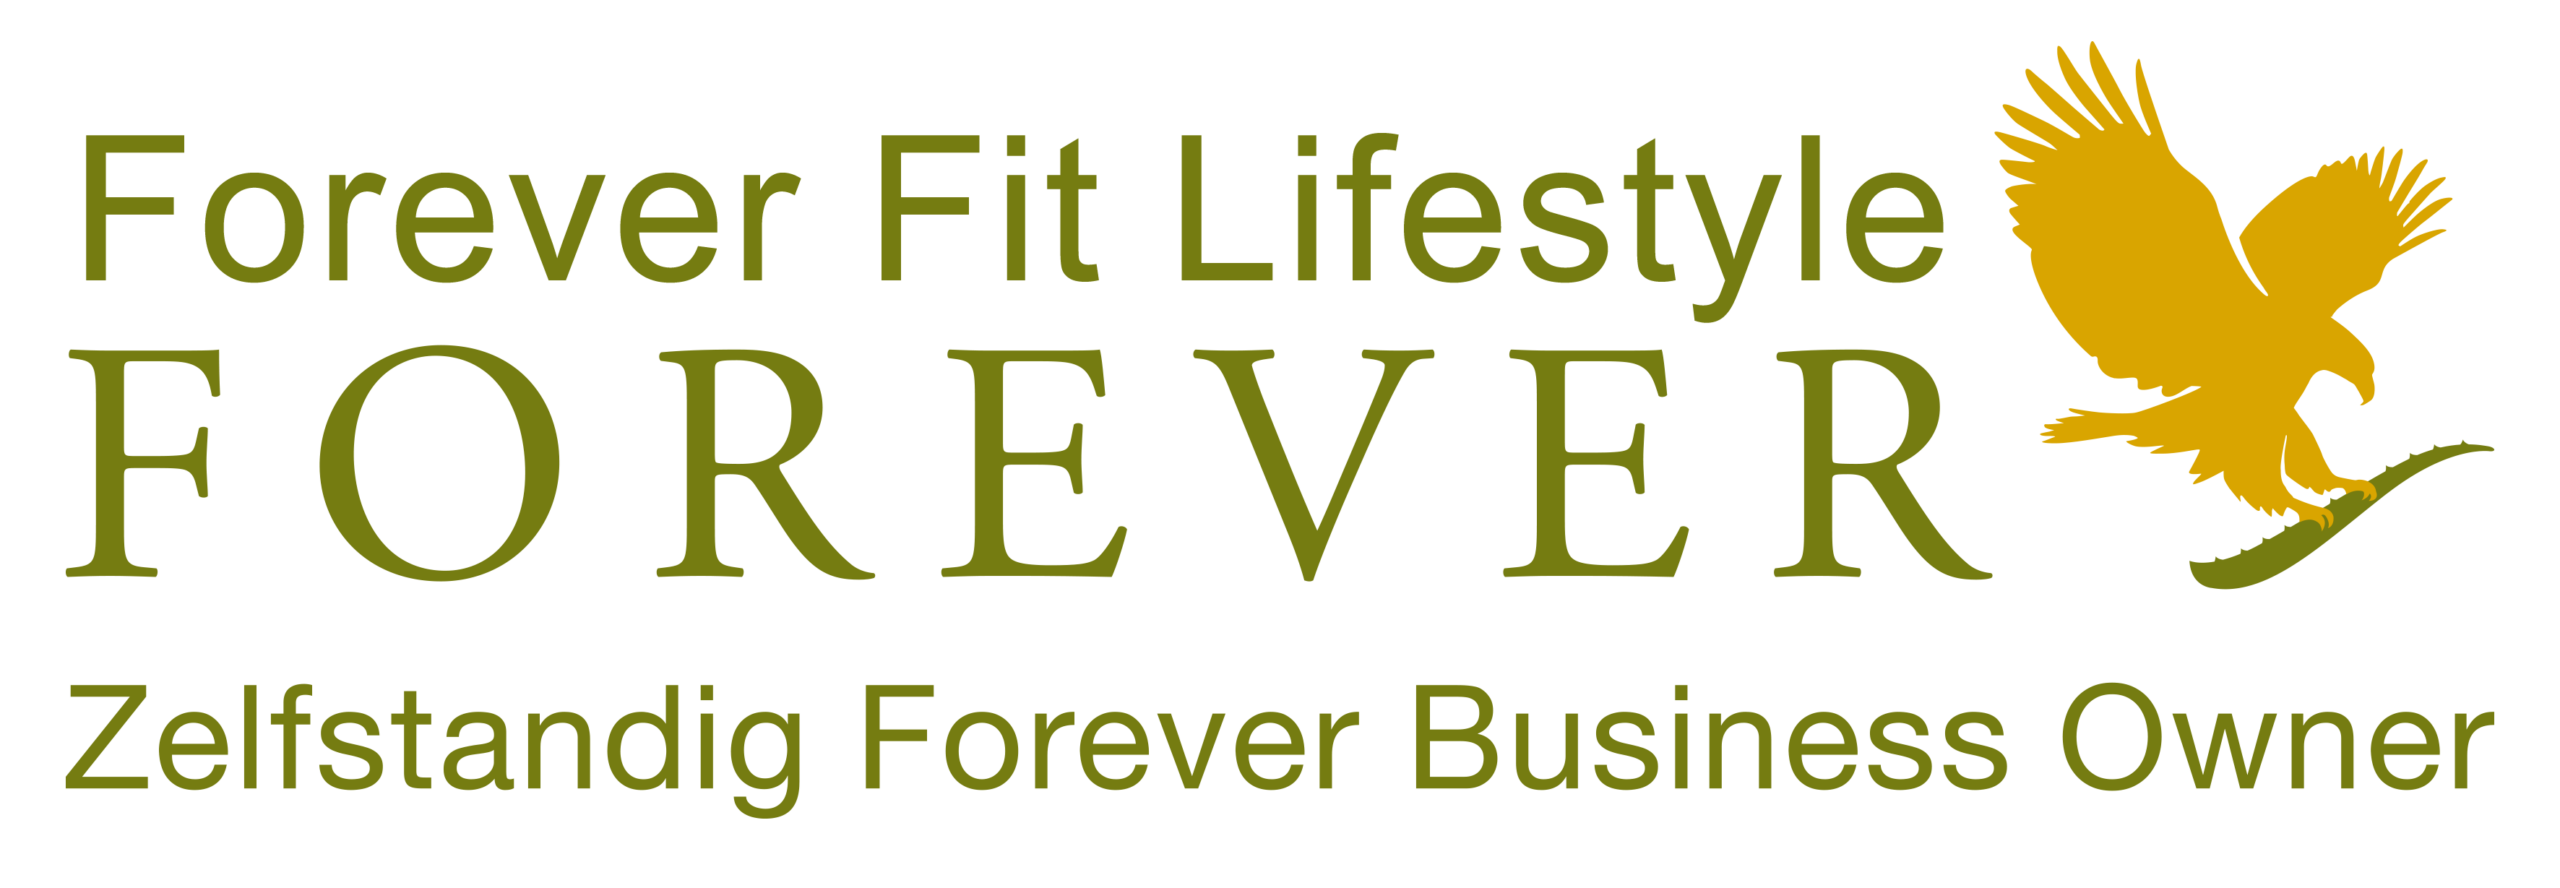 Forever Fit Lifestyle – Logo Zelfstandig Forever Business Owner